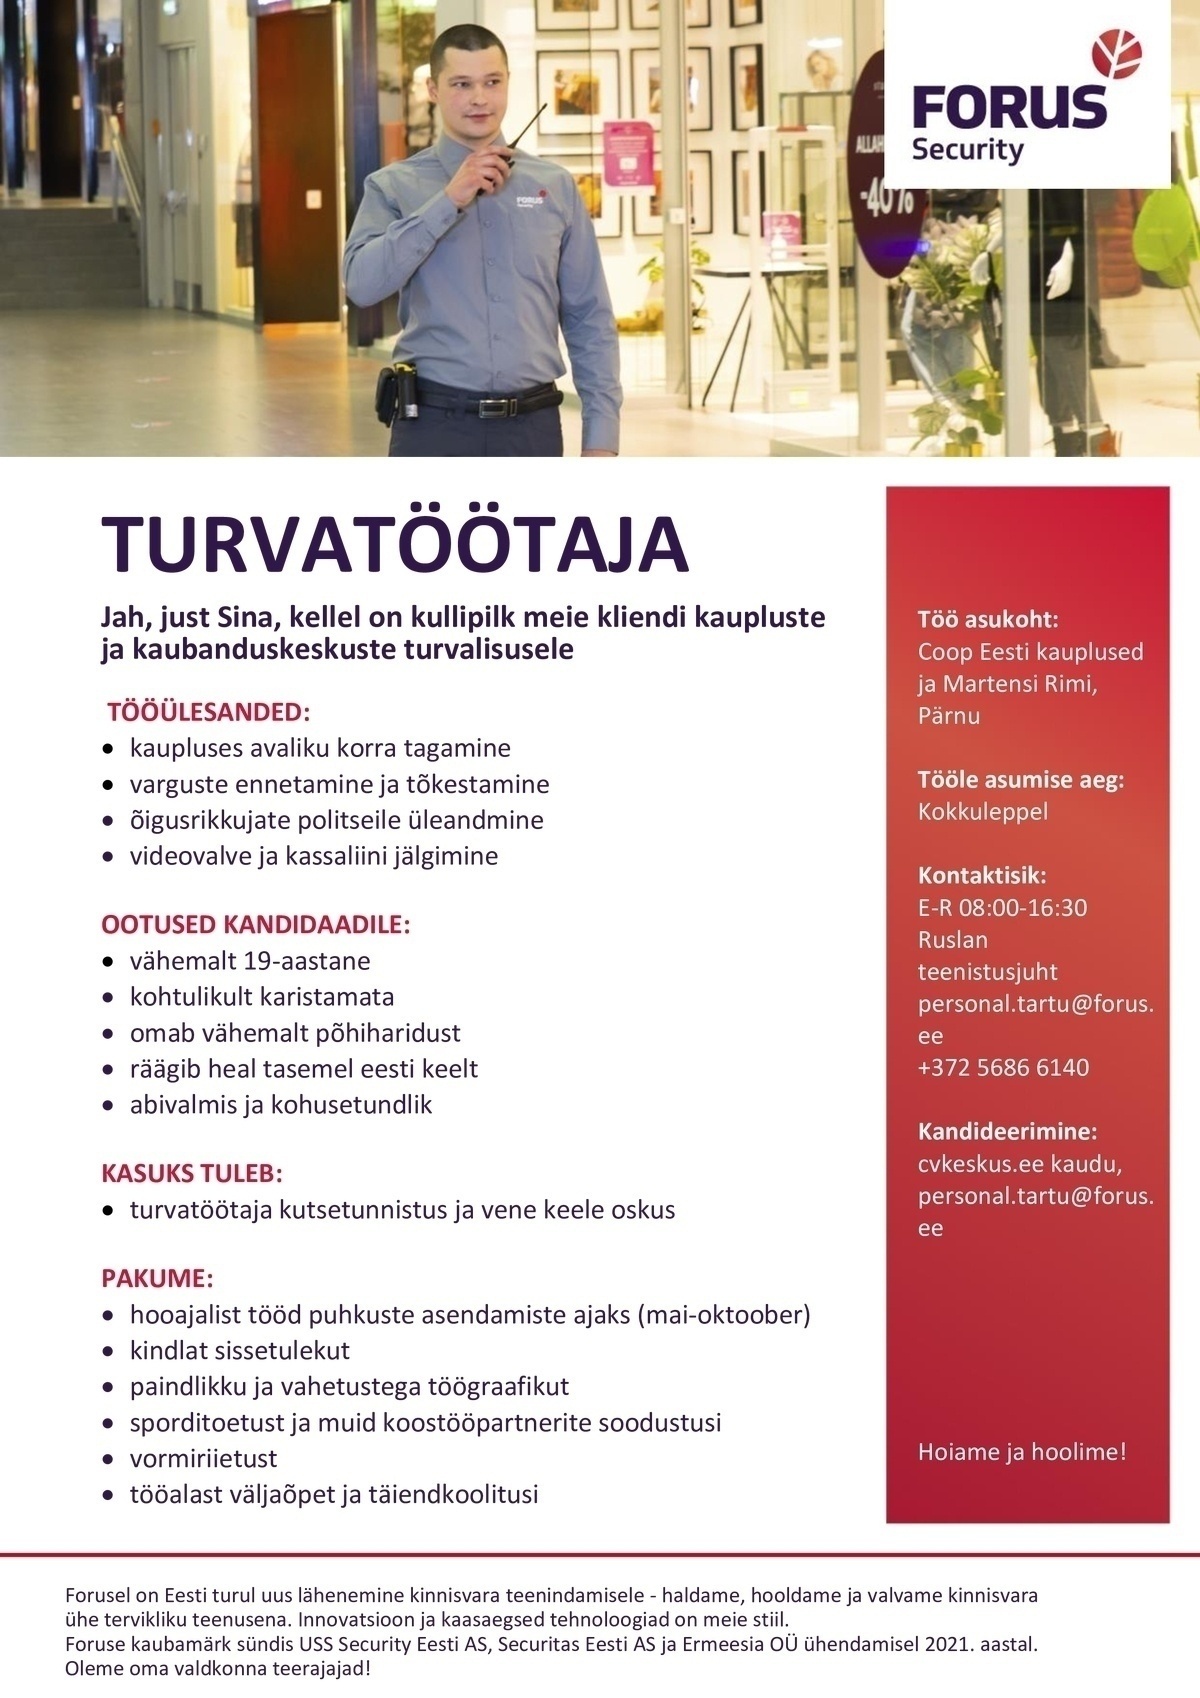 Forus Security AS Turvatöötaja kaubandusobjektil Pärnus (hooajaline)